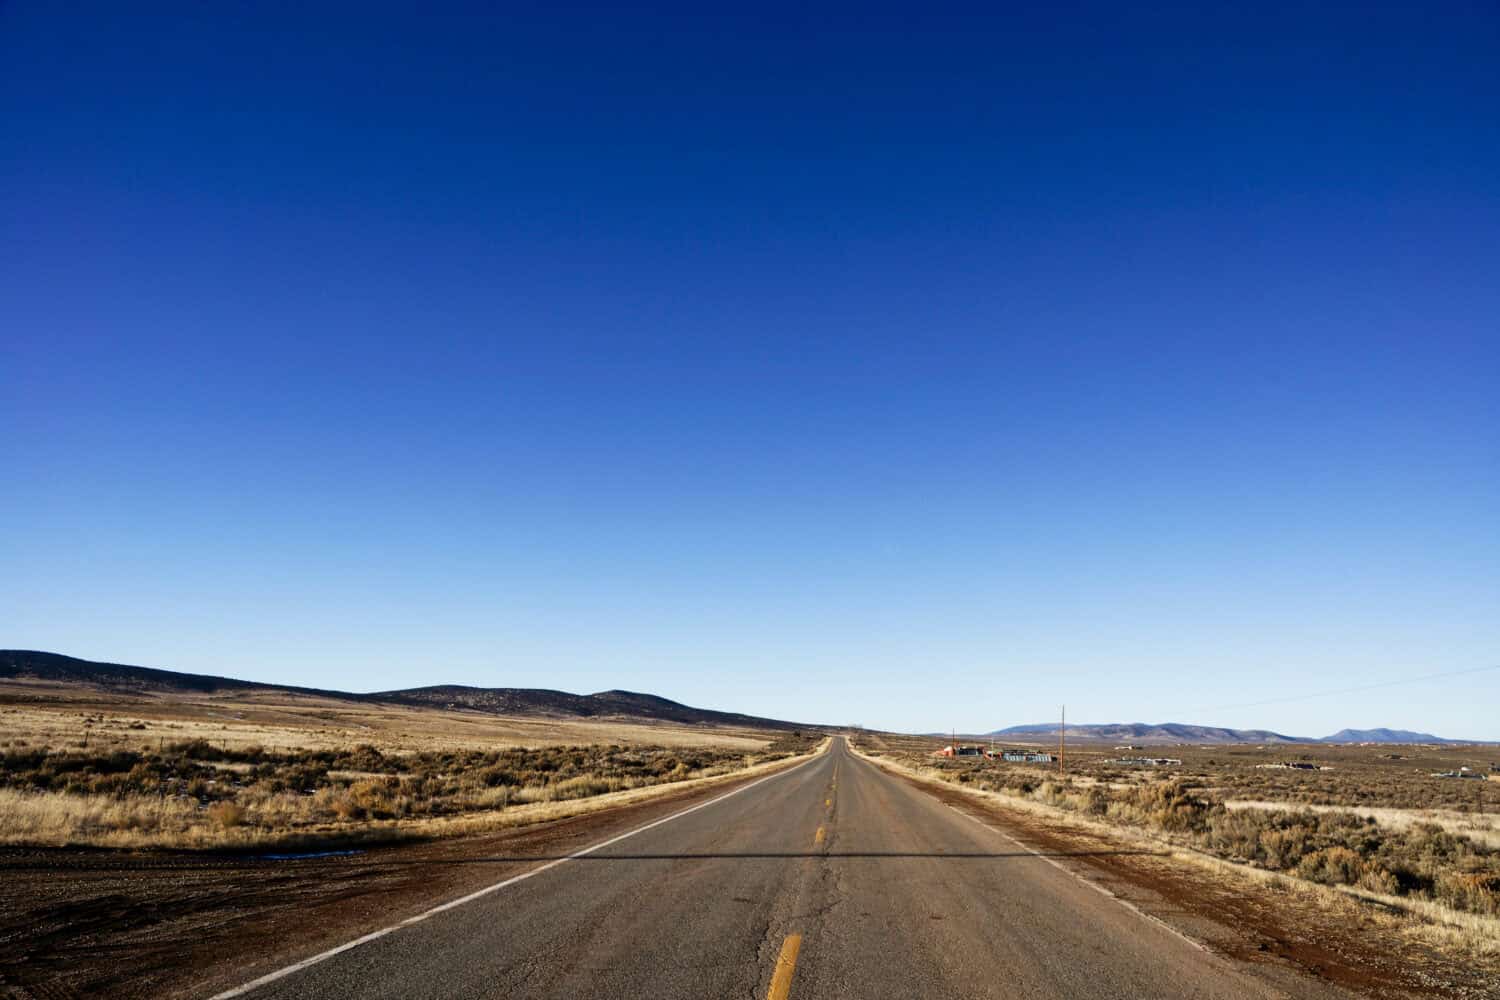 Empty road near Taos New Mexico